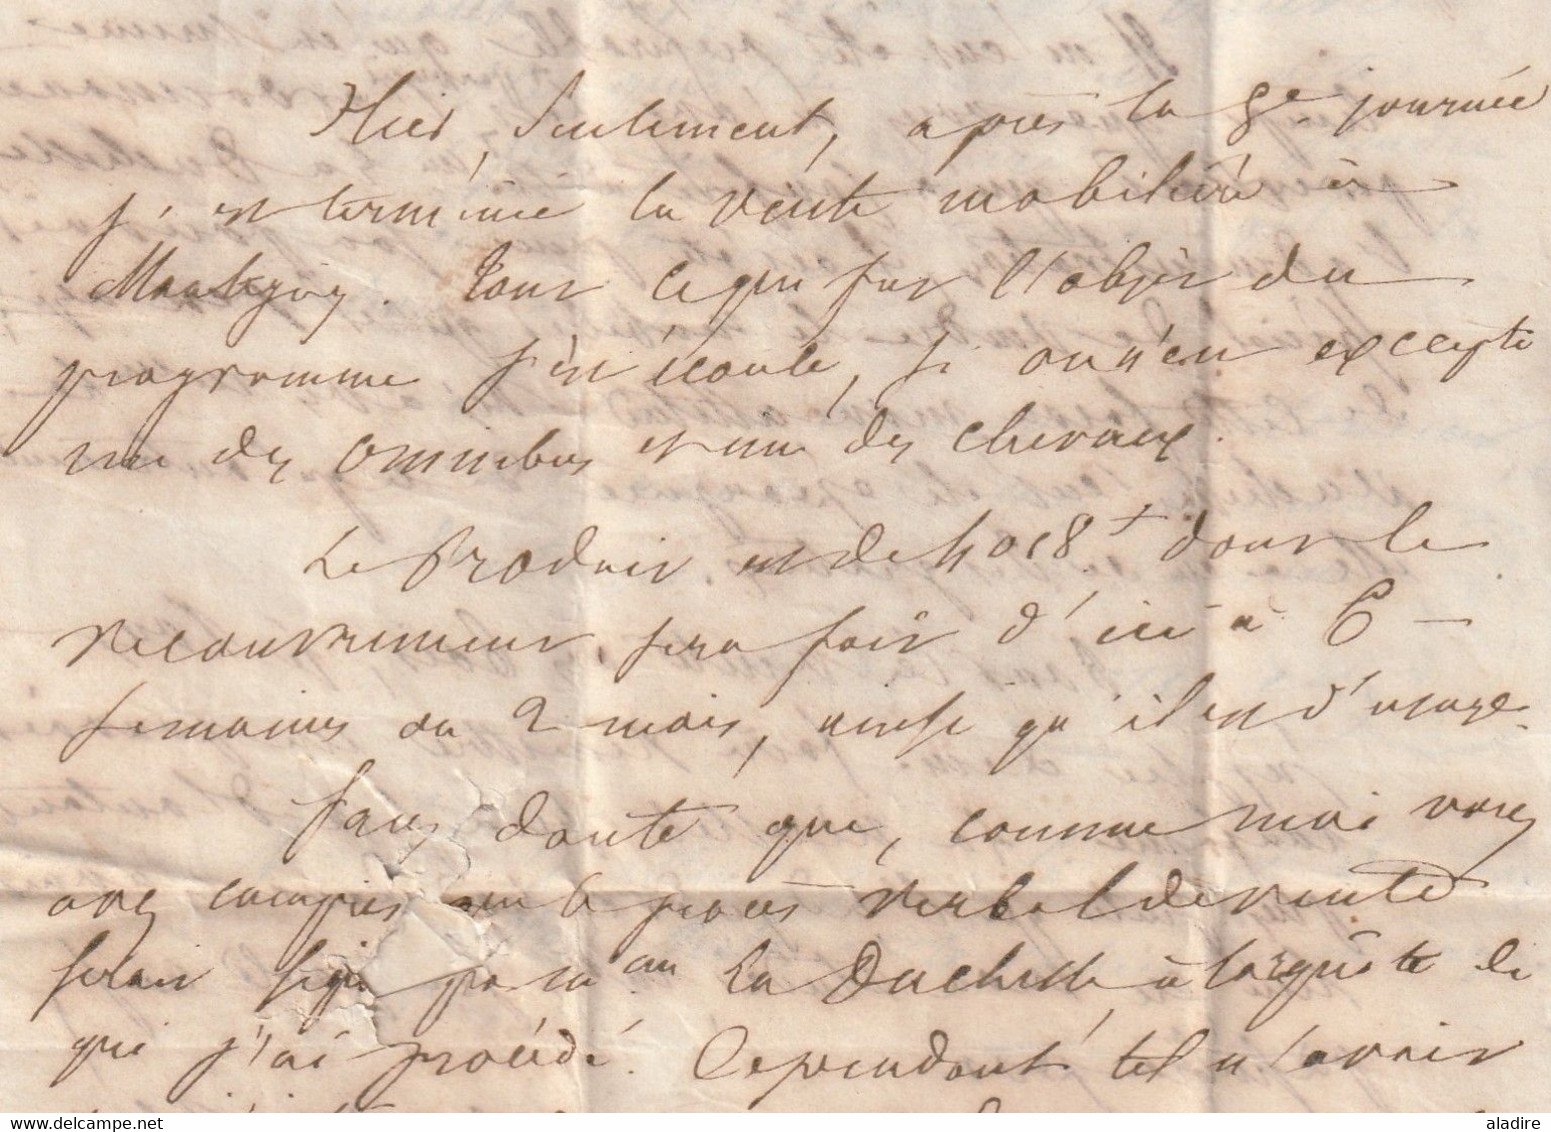 1848 - Lettre pliée avec correspondance de 3 pages de Dammarie ?, Seine et Marne  vers Paris - taxe 3 - cad d'arrivée